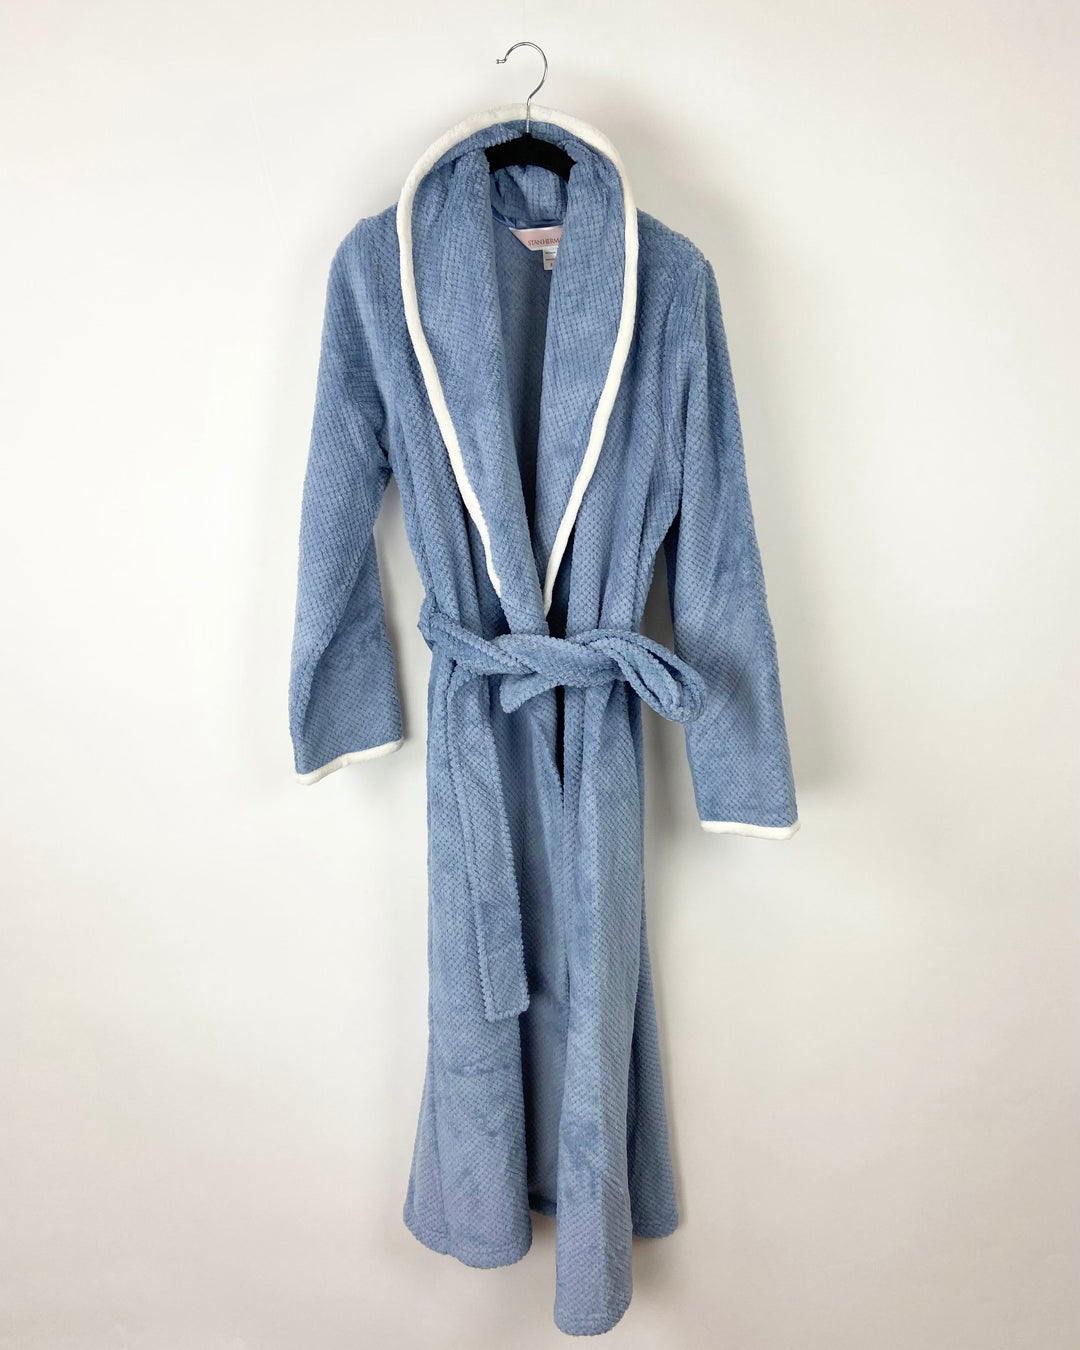 Dusty Blue Long Robe - Size 6/8